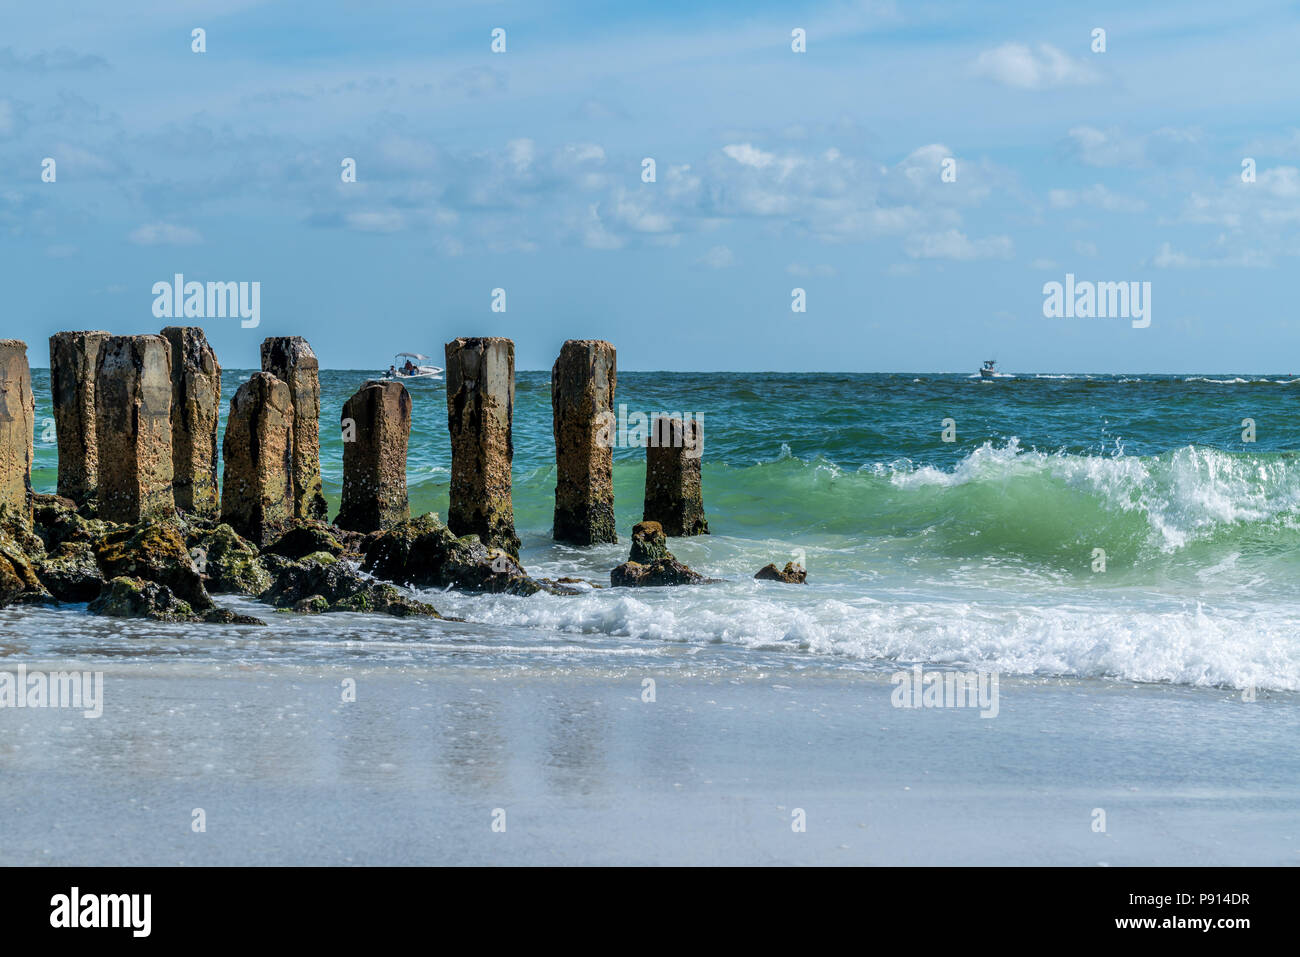 Un accueil chaleureux et agréable journée à la plage sur Anna Maria Island dans le sud-ouest de la Floride. Banque D'Images